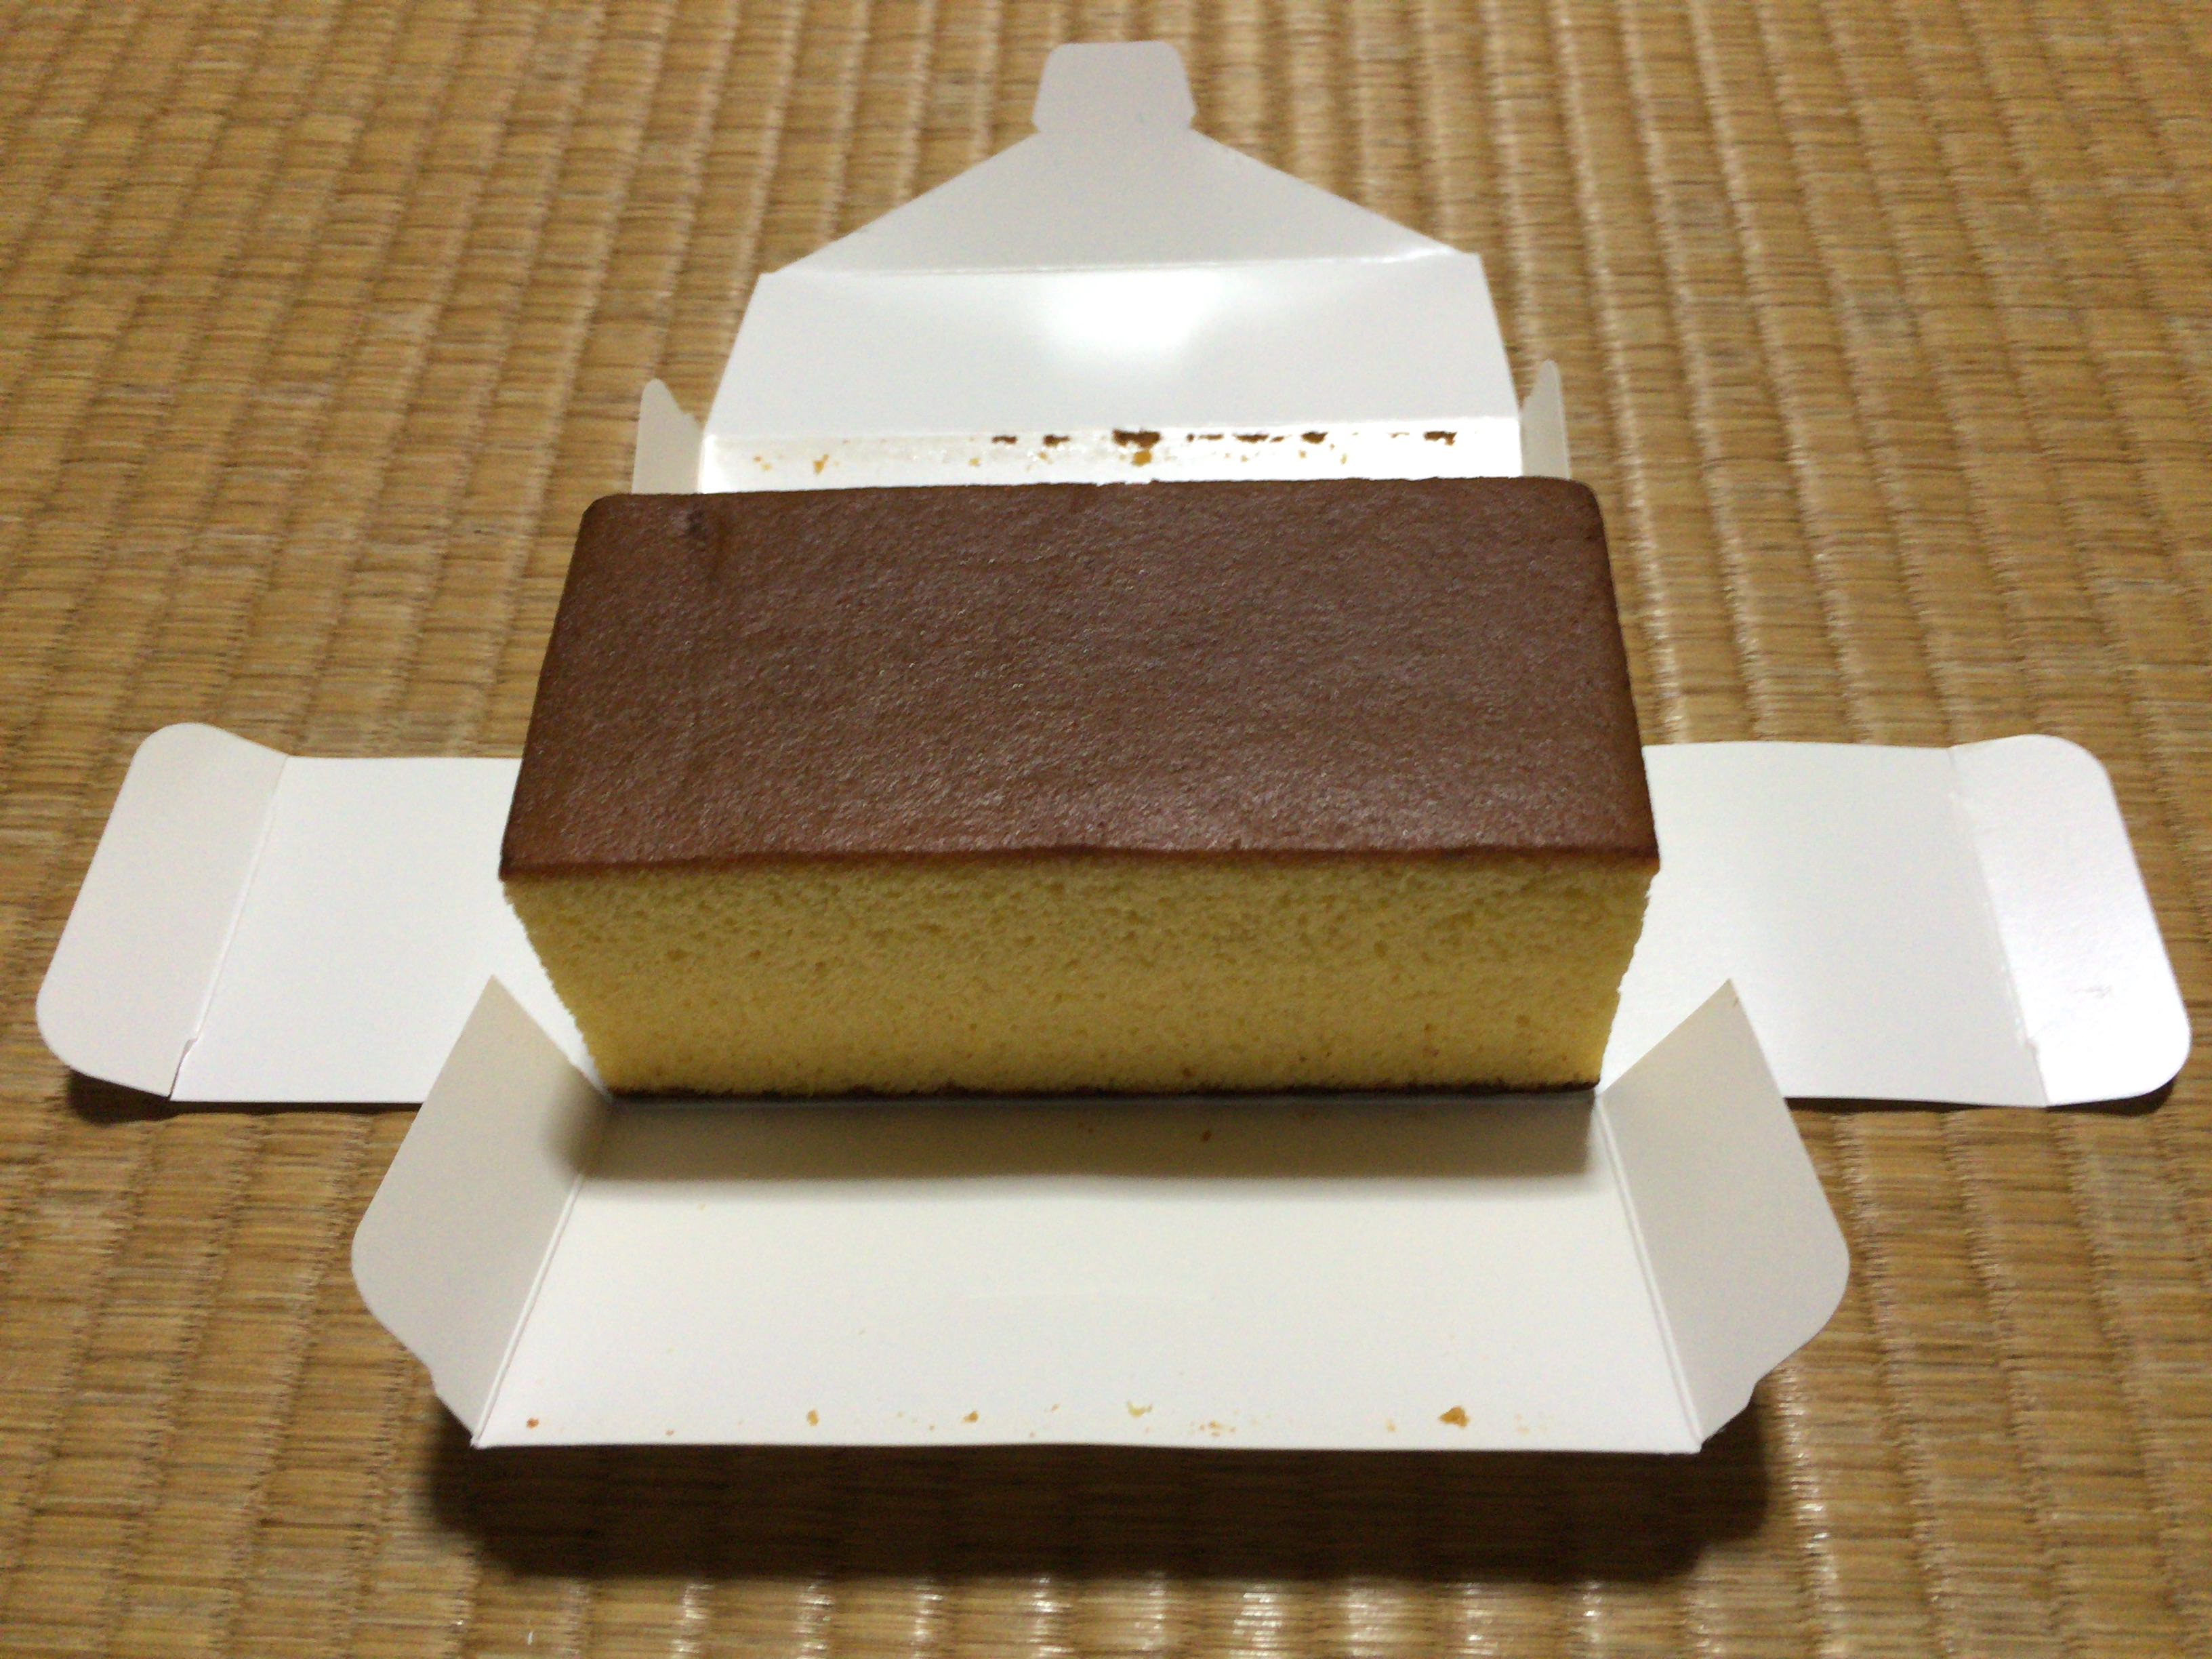 【四畳半神話大系】京名菓 大極殿本舗のカステラを食べに京都へ。